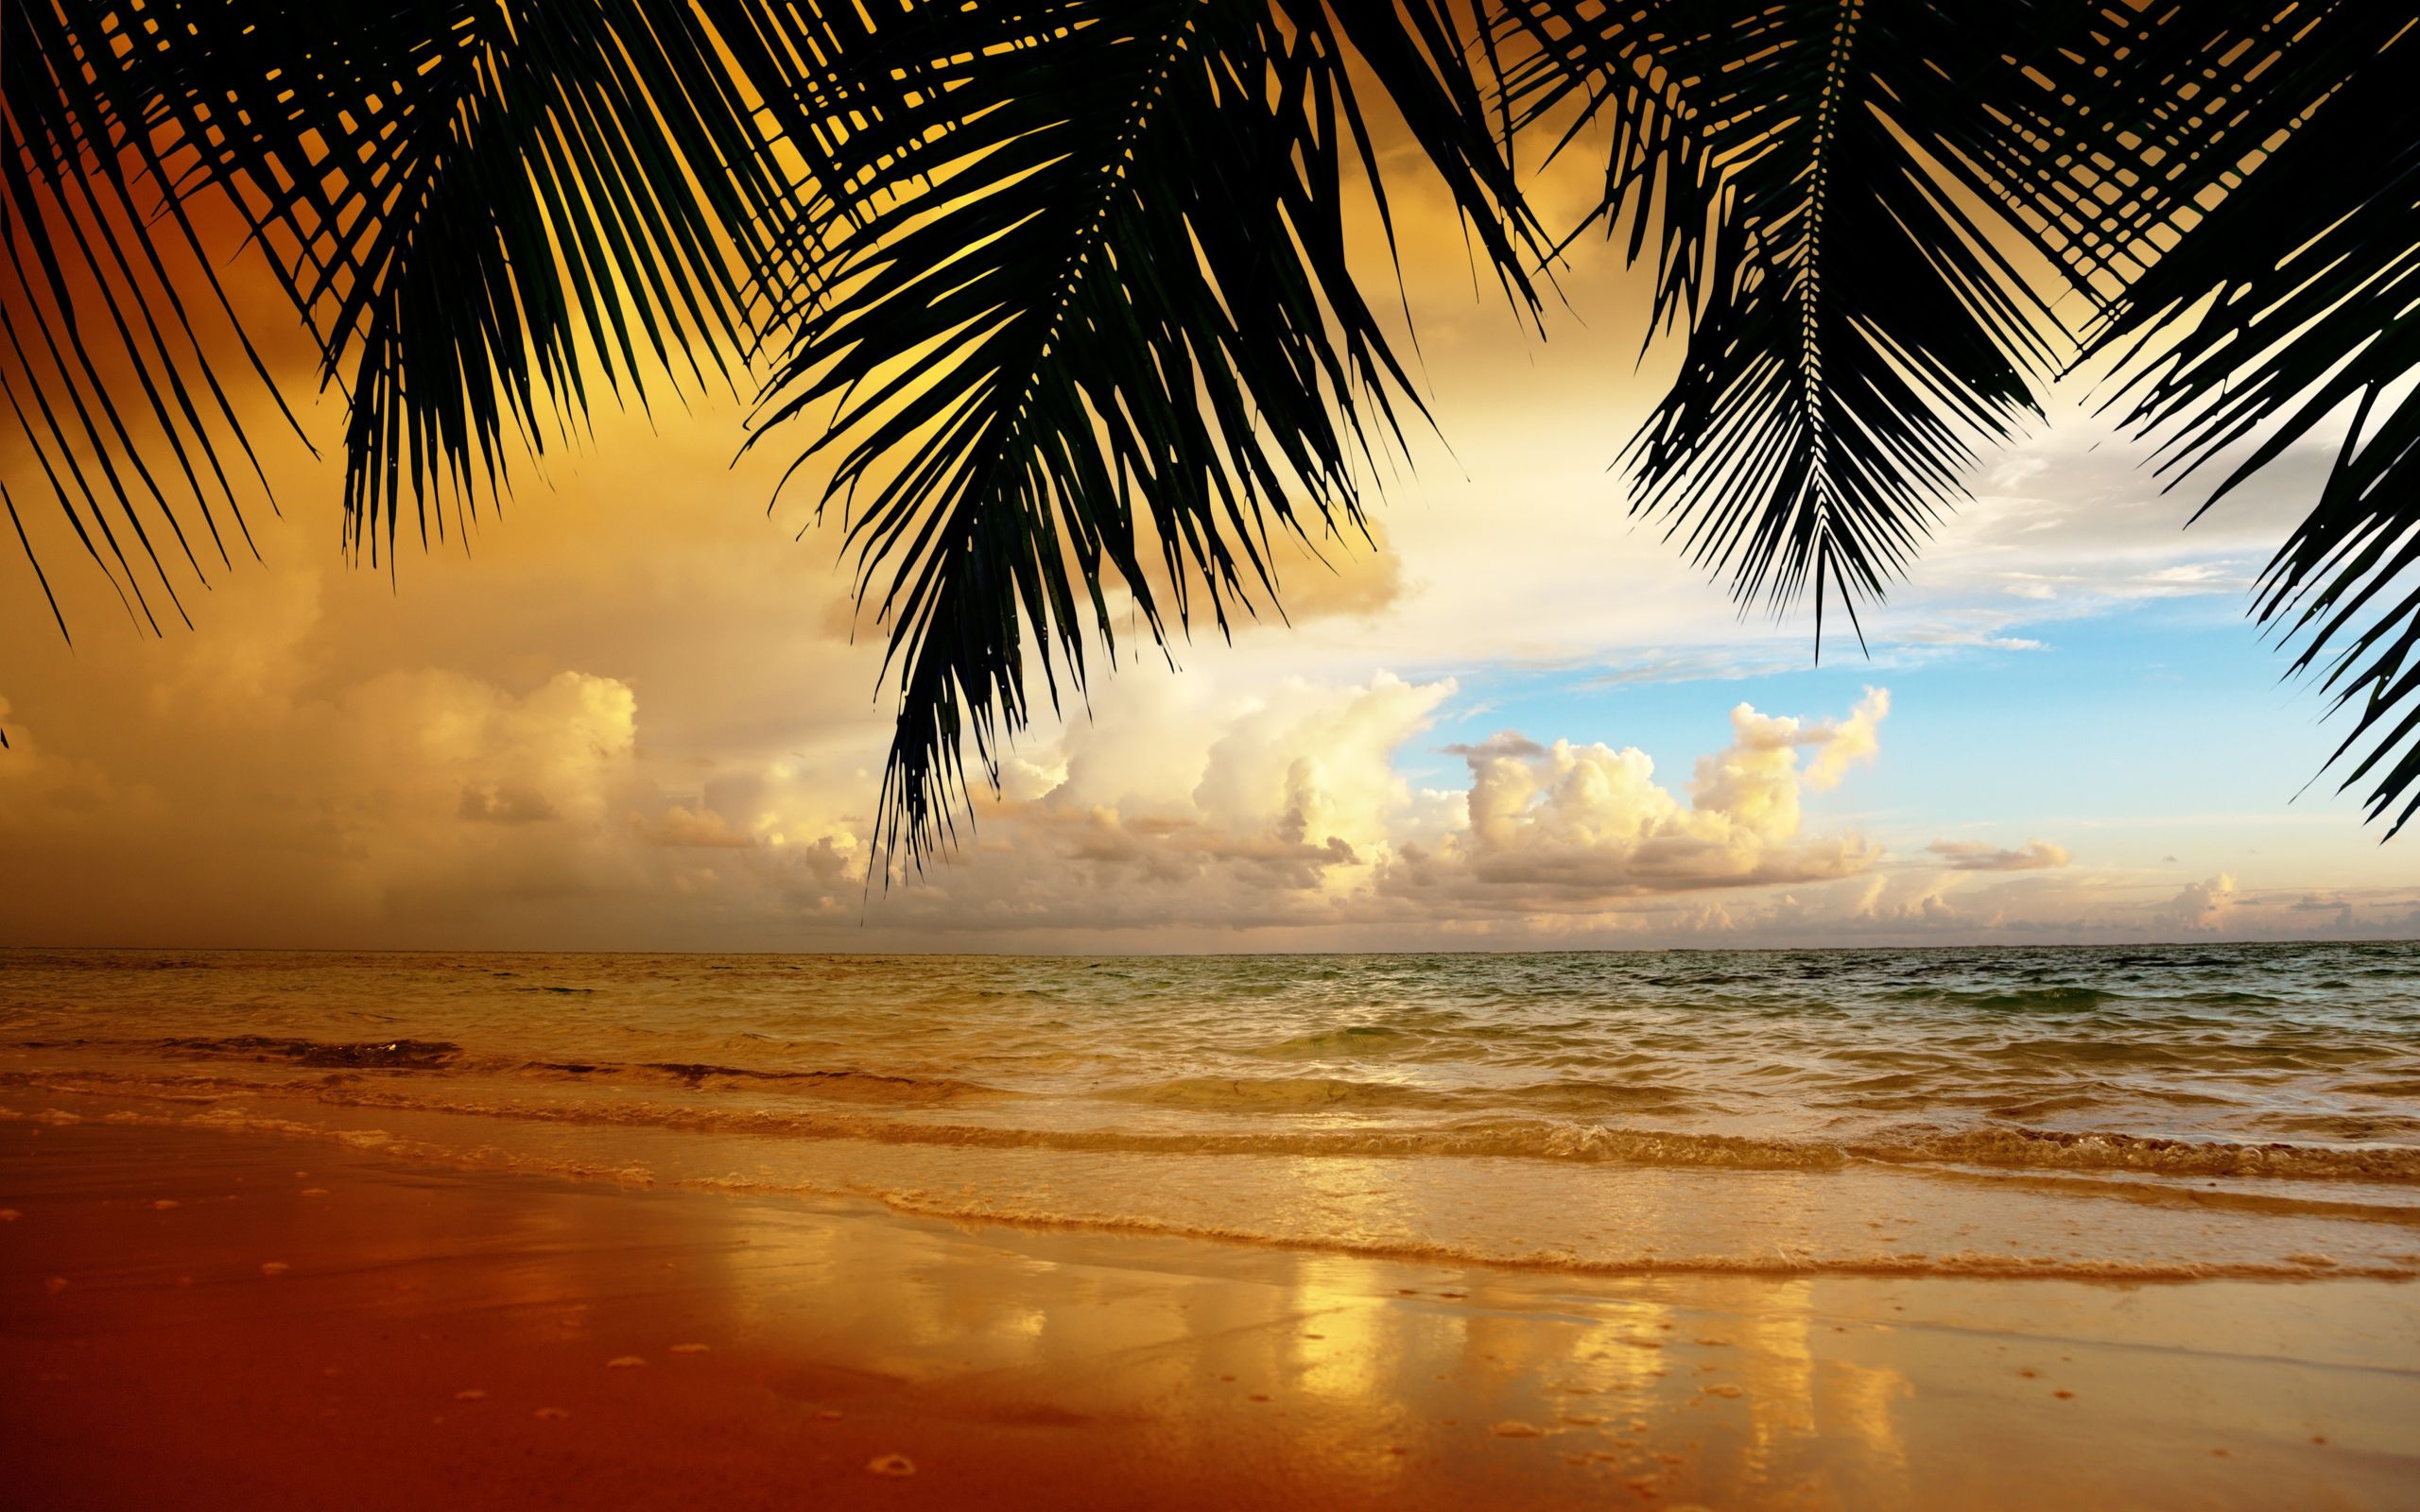  Strand Hintergrundbild 2560x1600. Strand Hintergrundbilder für den Desktop, kostenlose Strand Bilder und Hintergründe für PC herunterladen